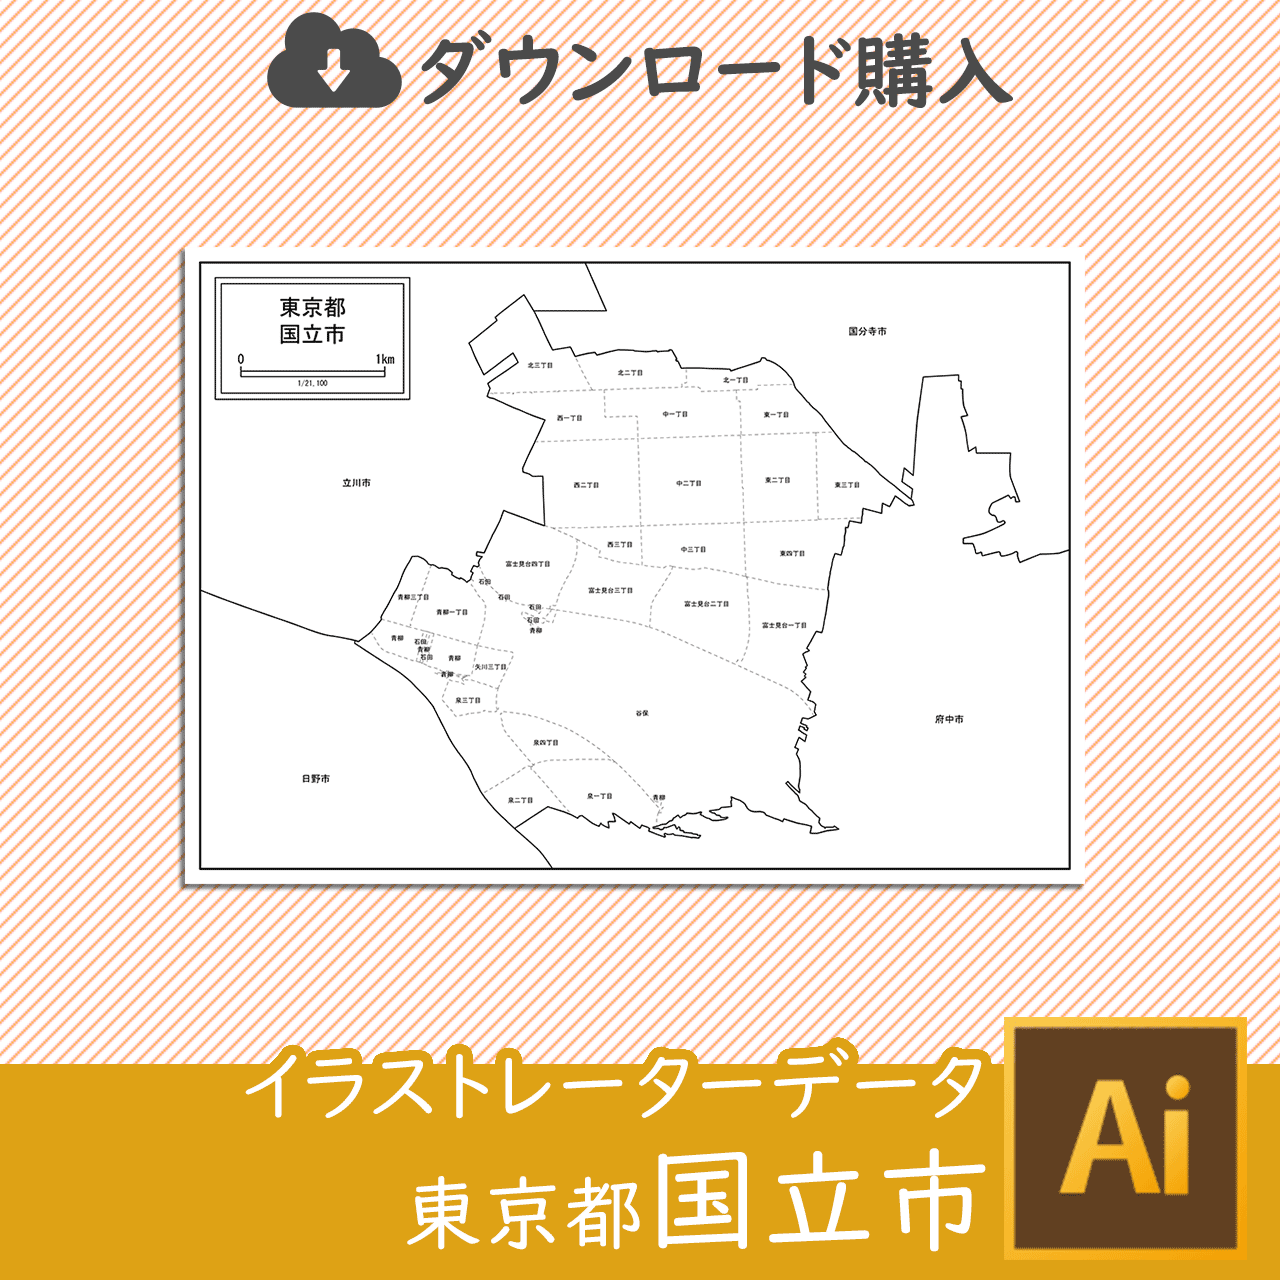 国立市の白地図のサムネイル画像